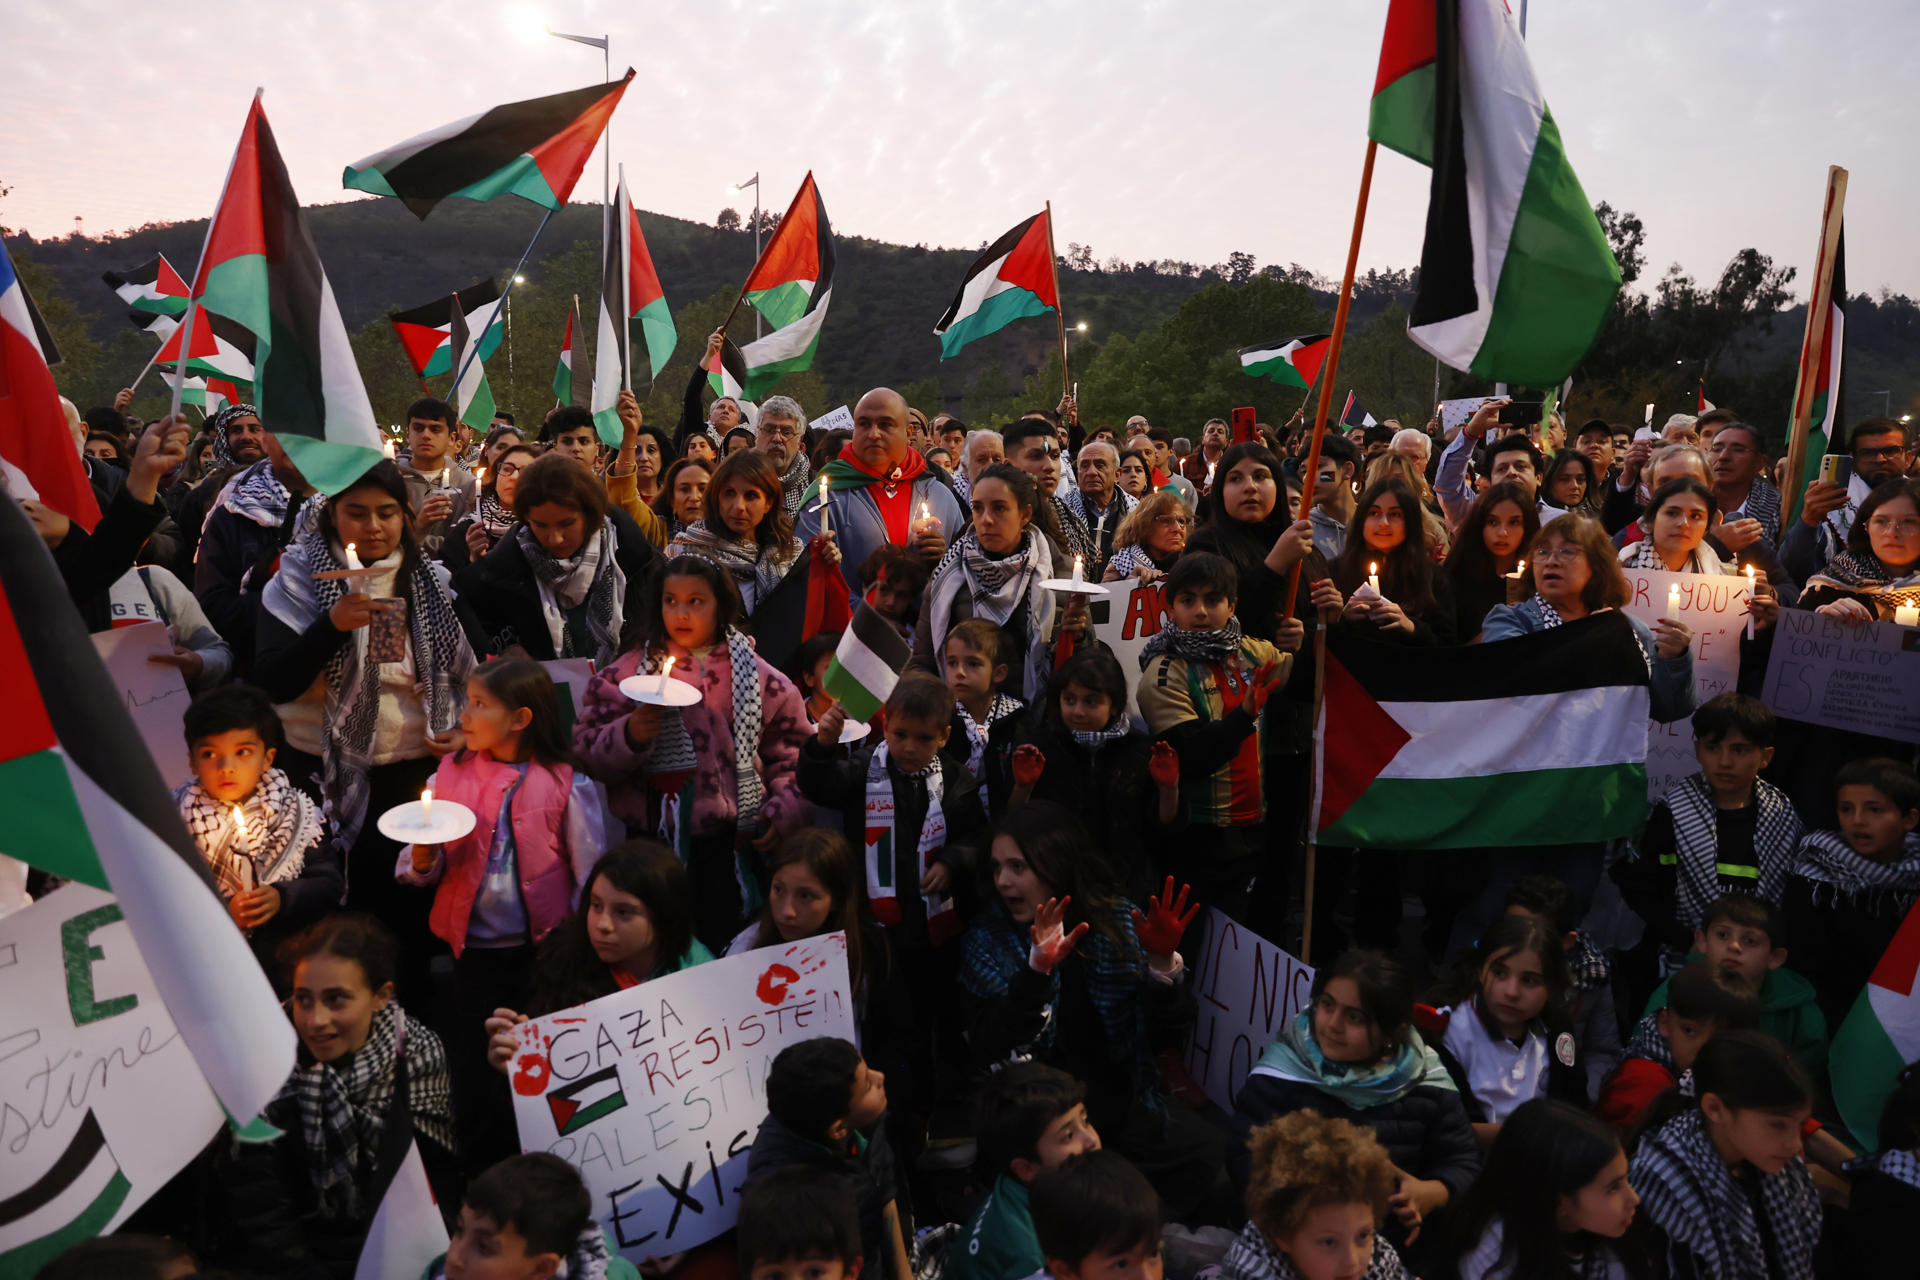 Palestina Hoy on X: El significado de la bandera de Palestina